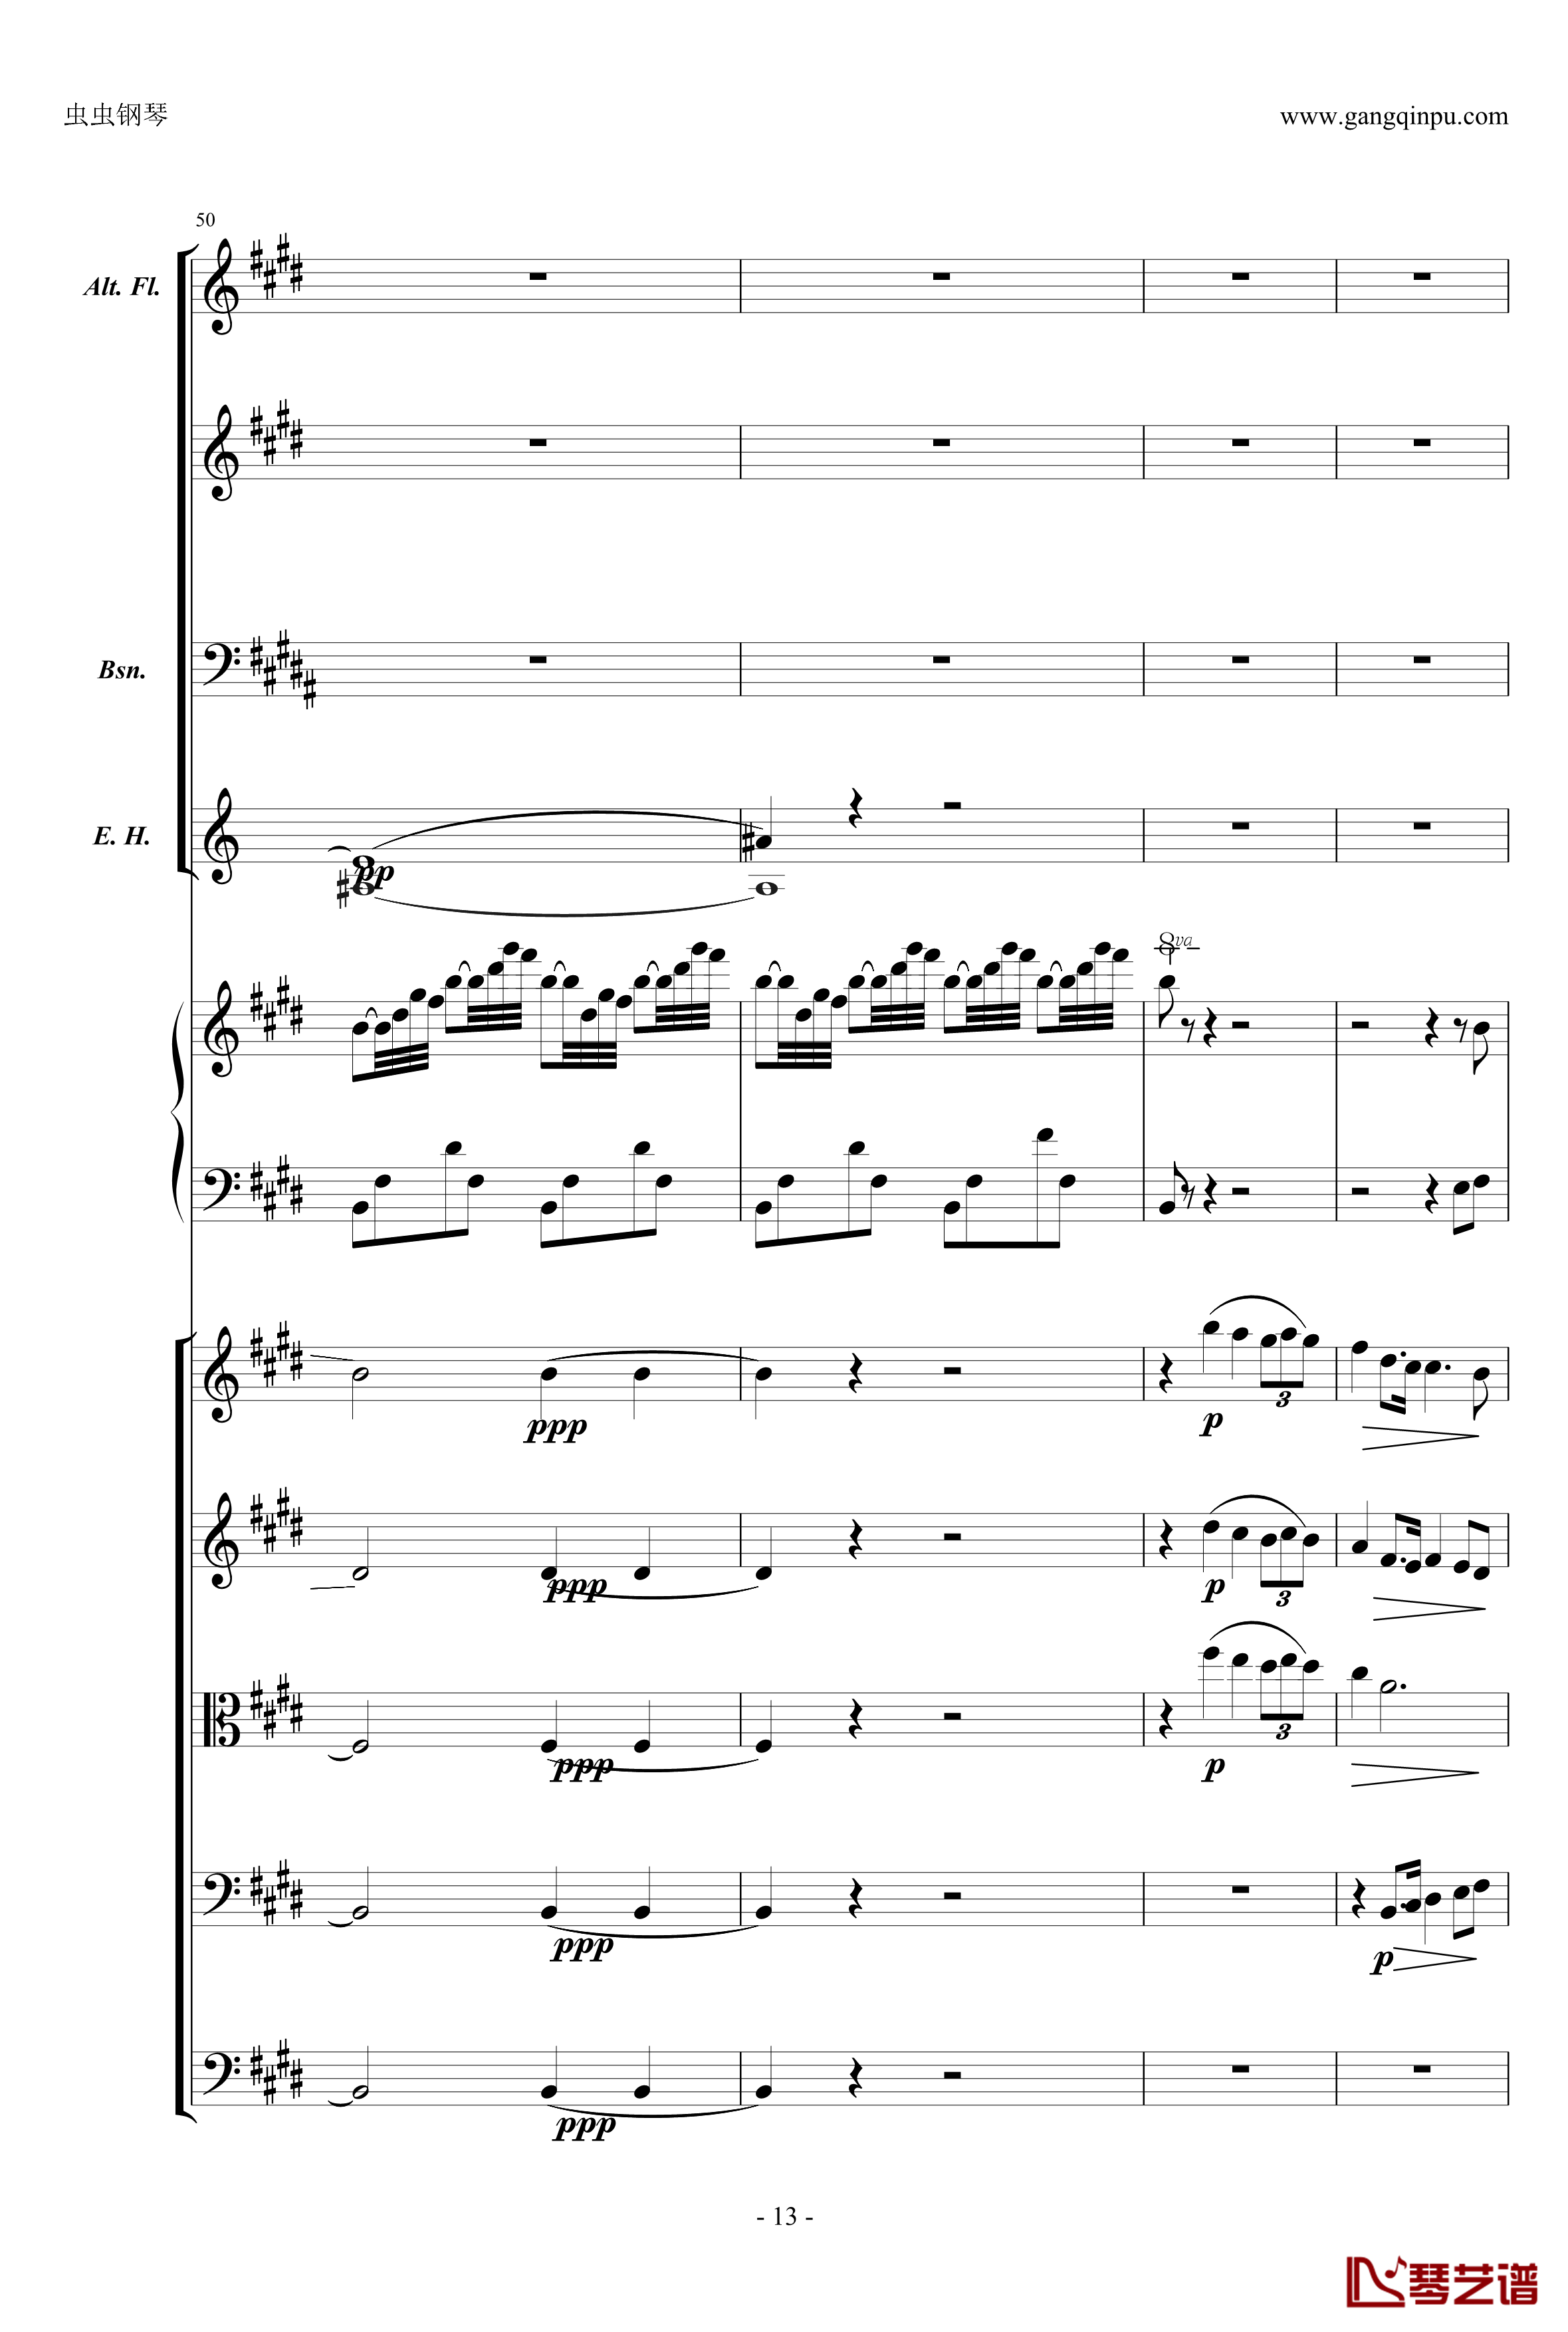 萧邦第一钢琴协奏曲第二乐章钢琴谱-肖邦-chopin13